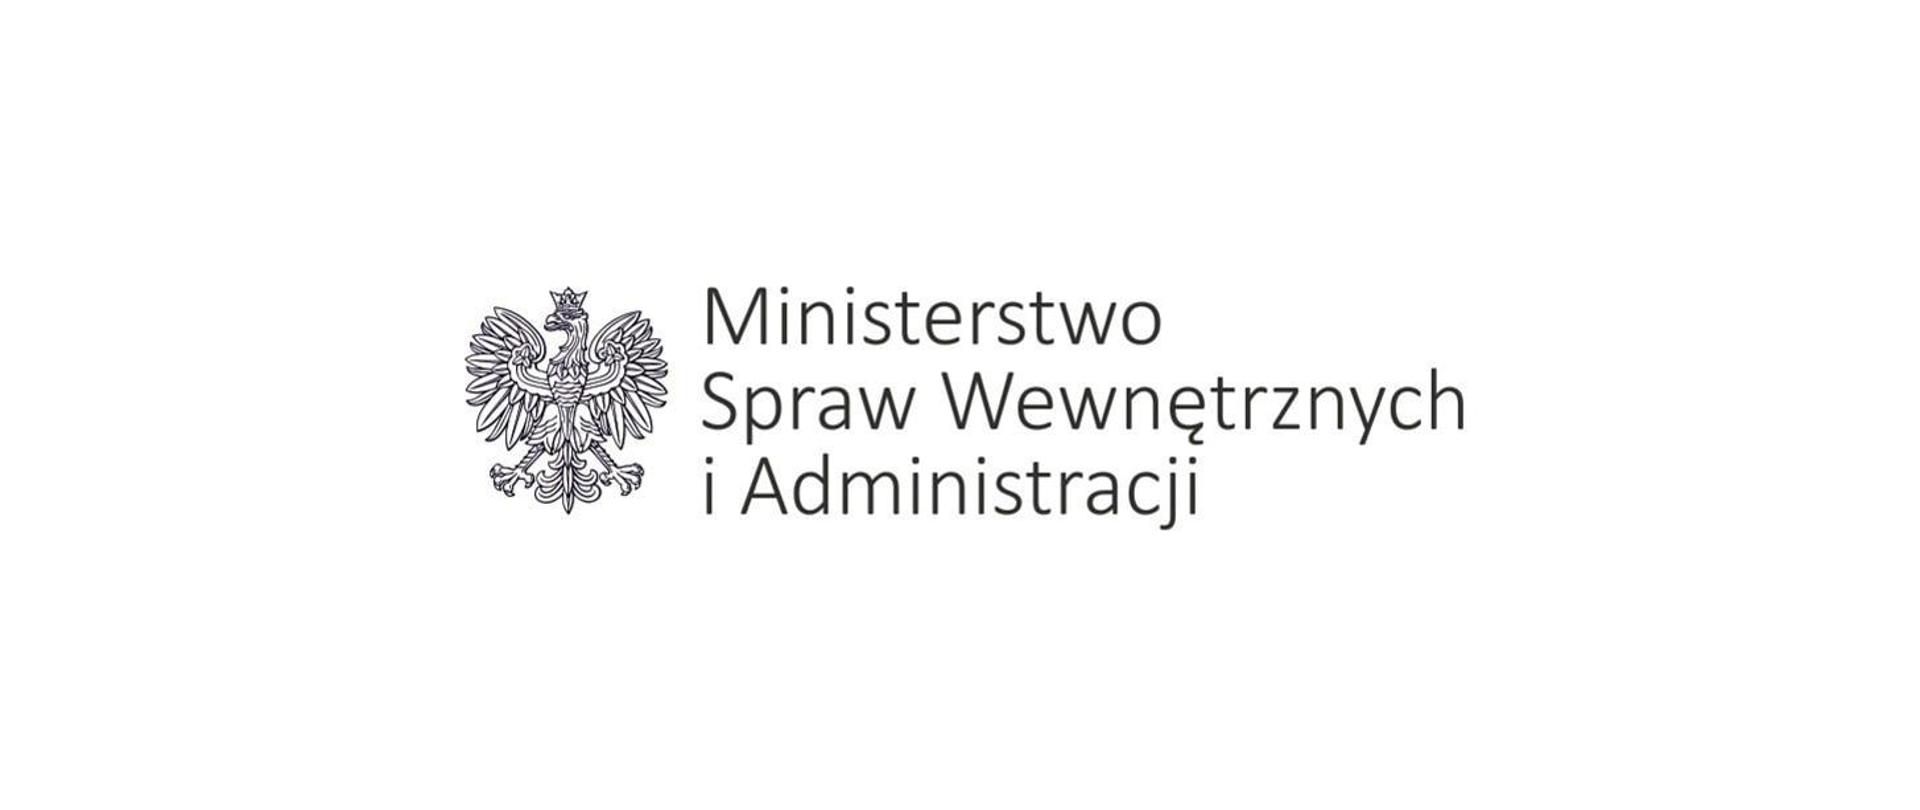 Zdjęcie przedstawia logo Ministerstwa Spraw Wewnętrznych i Administracji